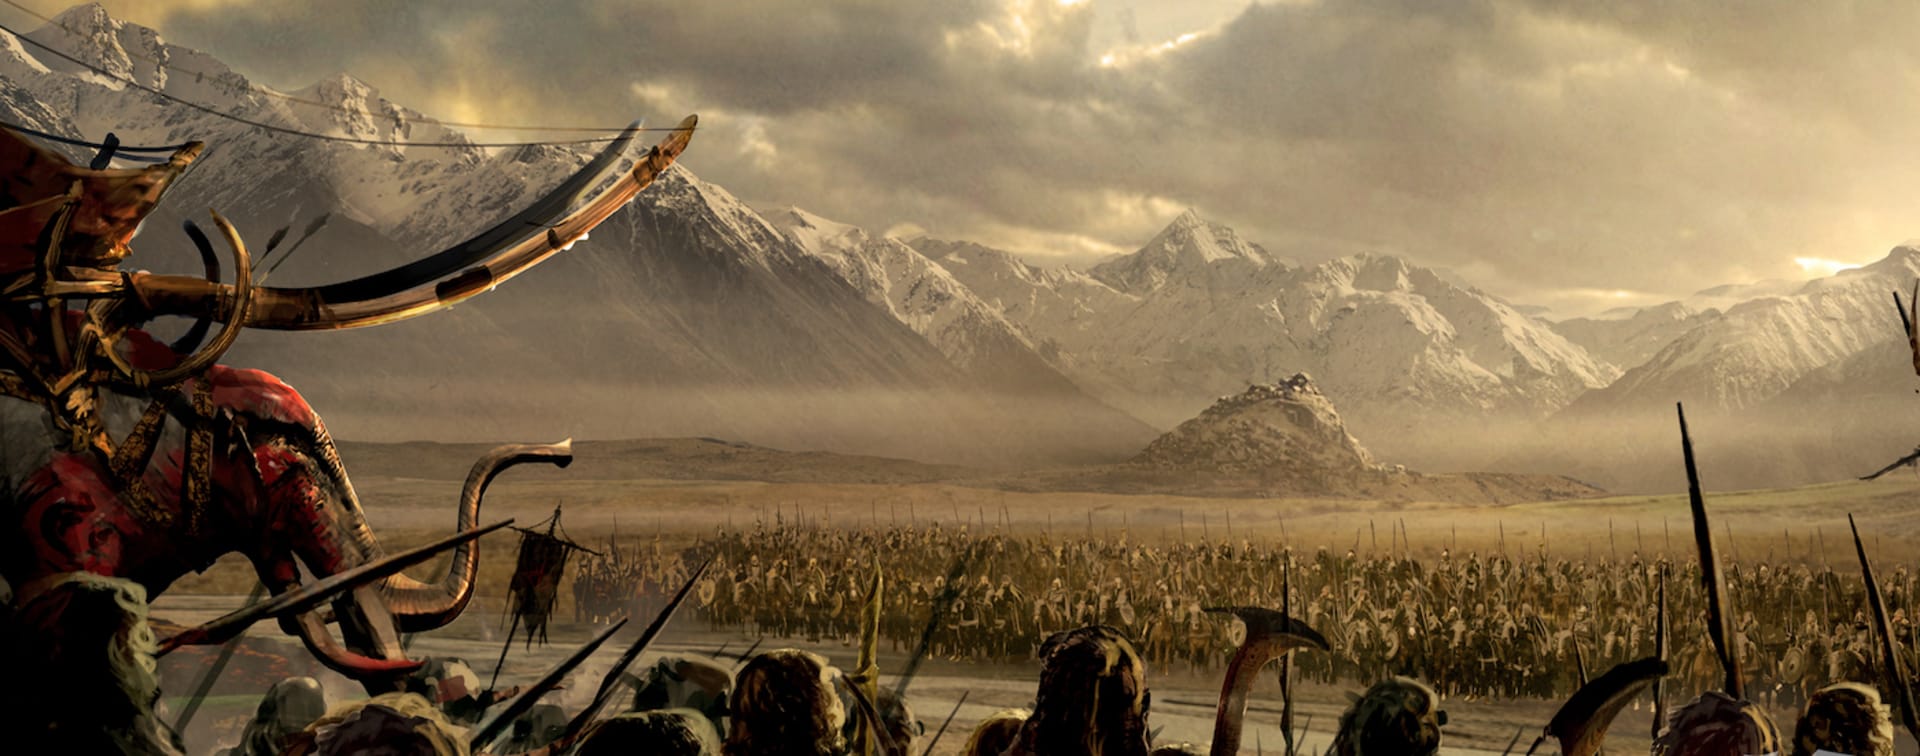 Jeden z prvních uvolněných obrázků z chystaného animovaného filmu The Lord of the Rings: The War of the Rohirrim